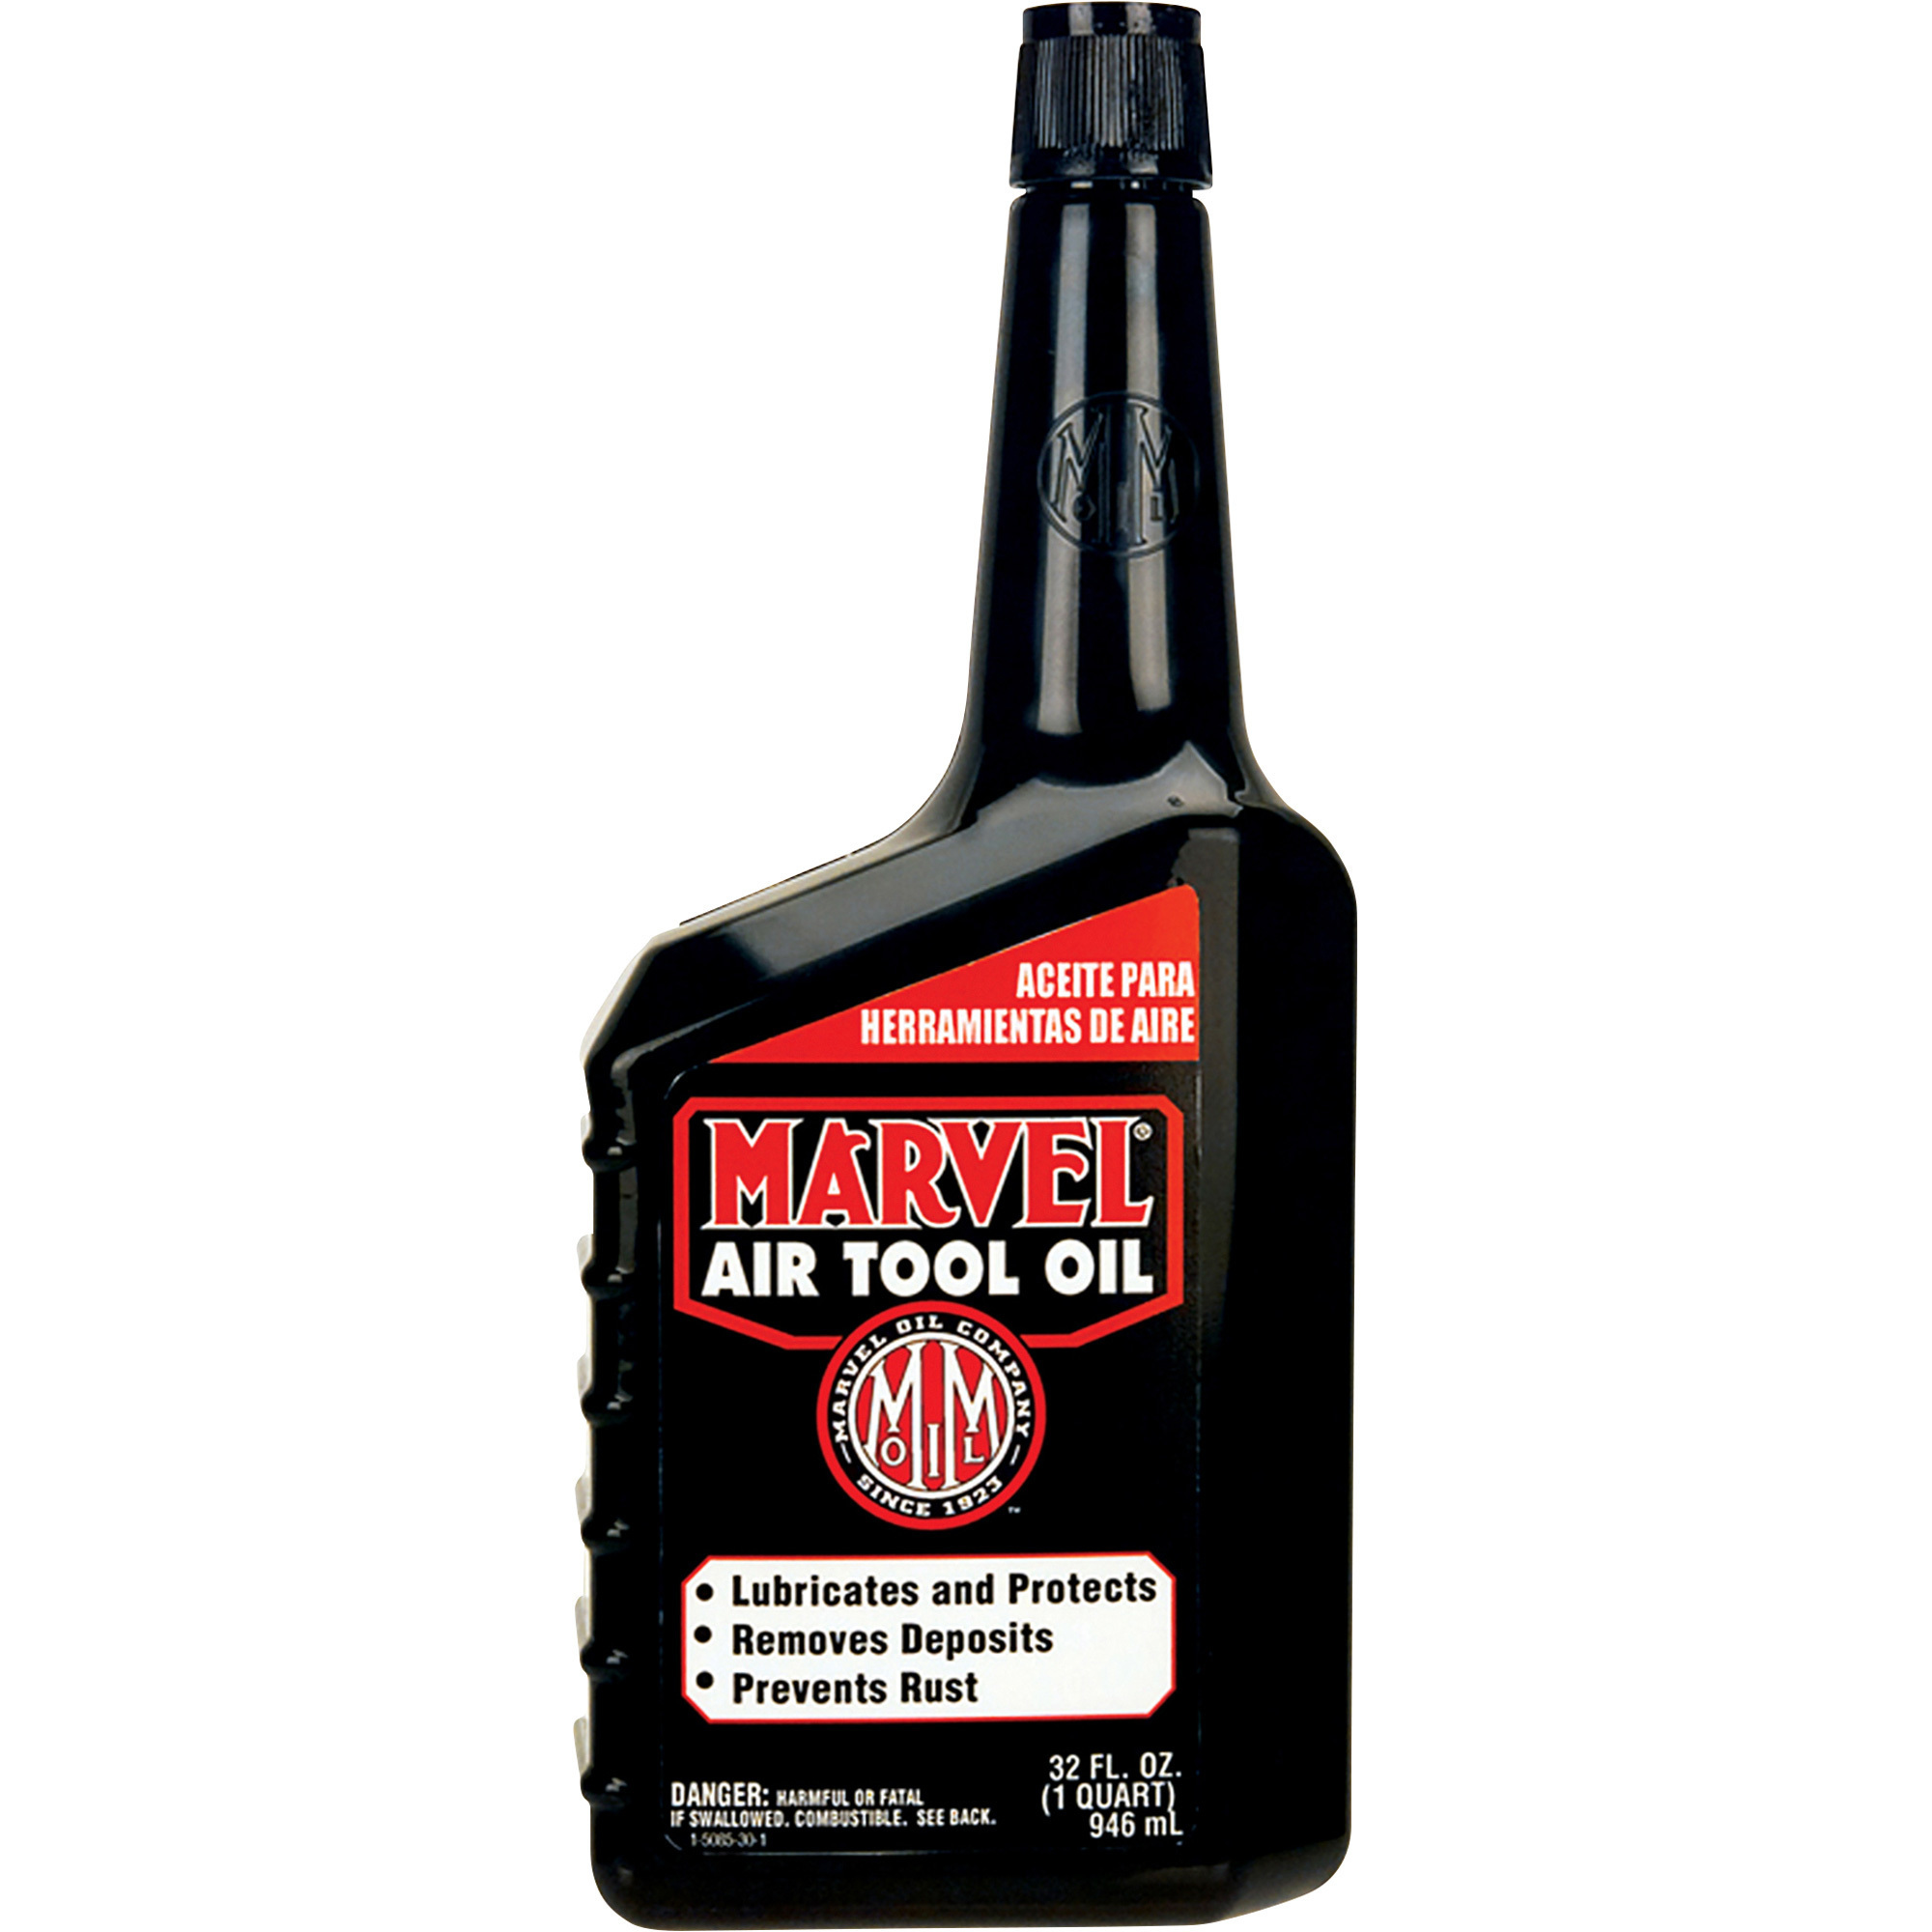 Marvel Air Tool Oil â 32-Oz. Bottle